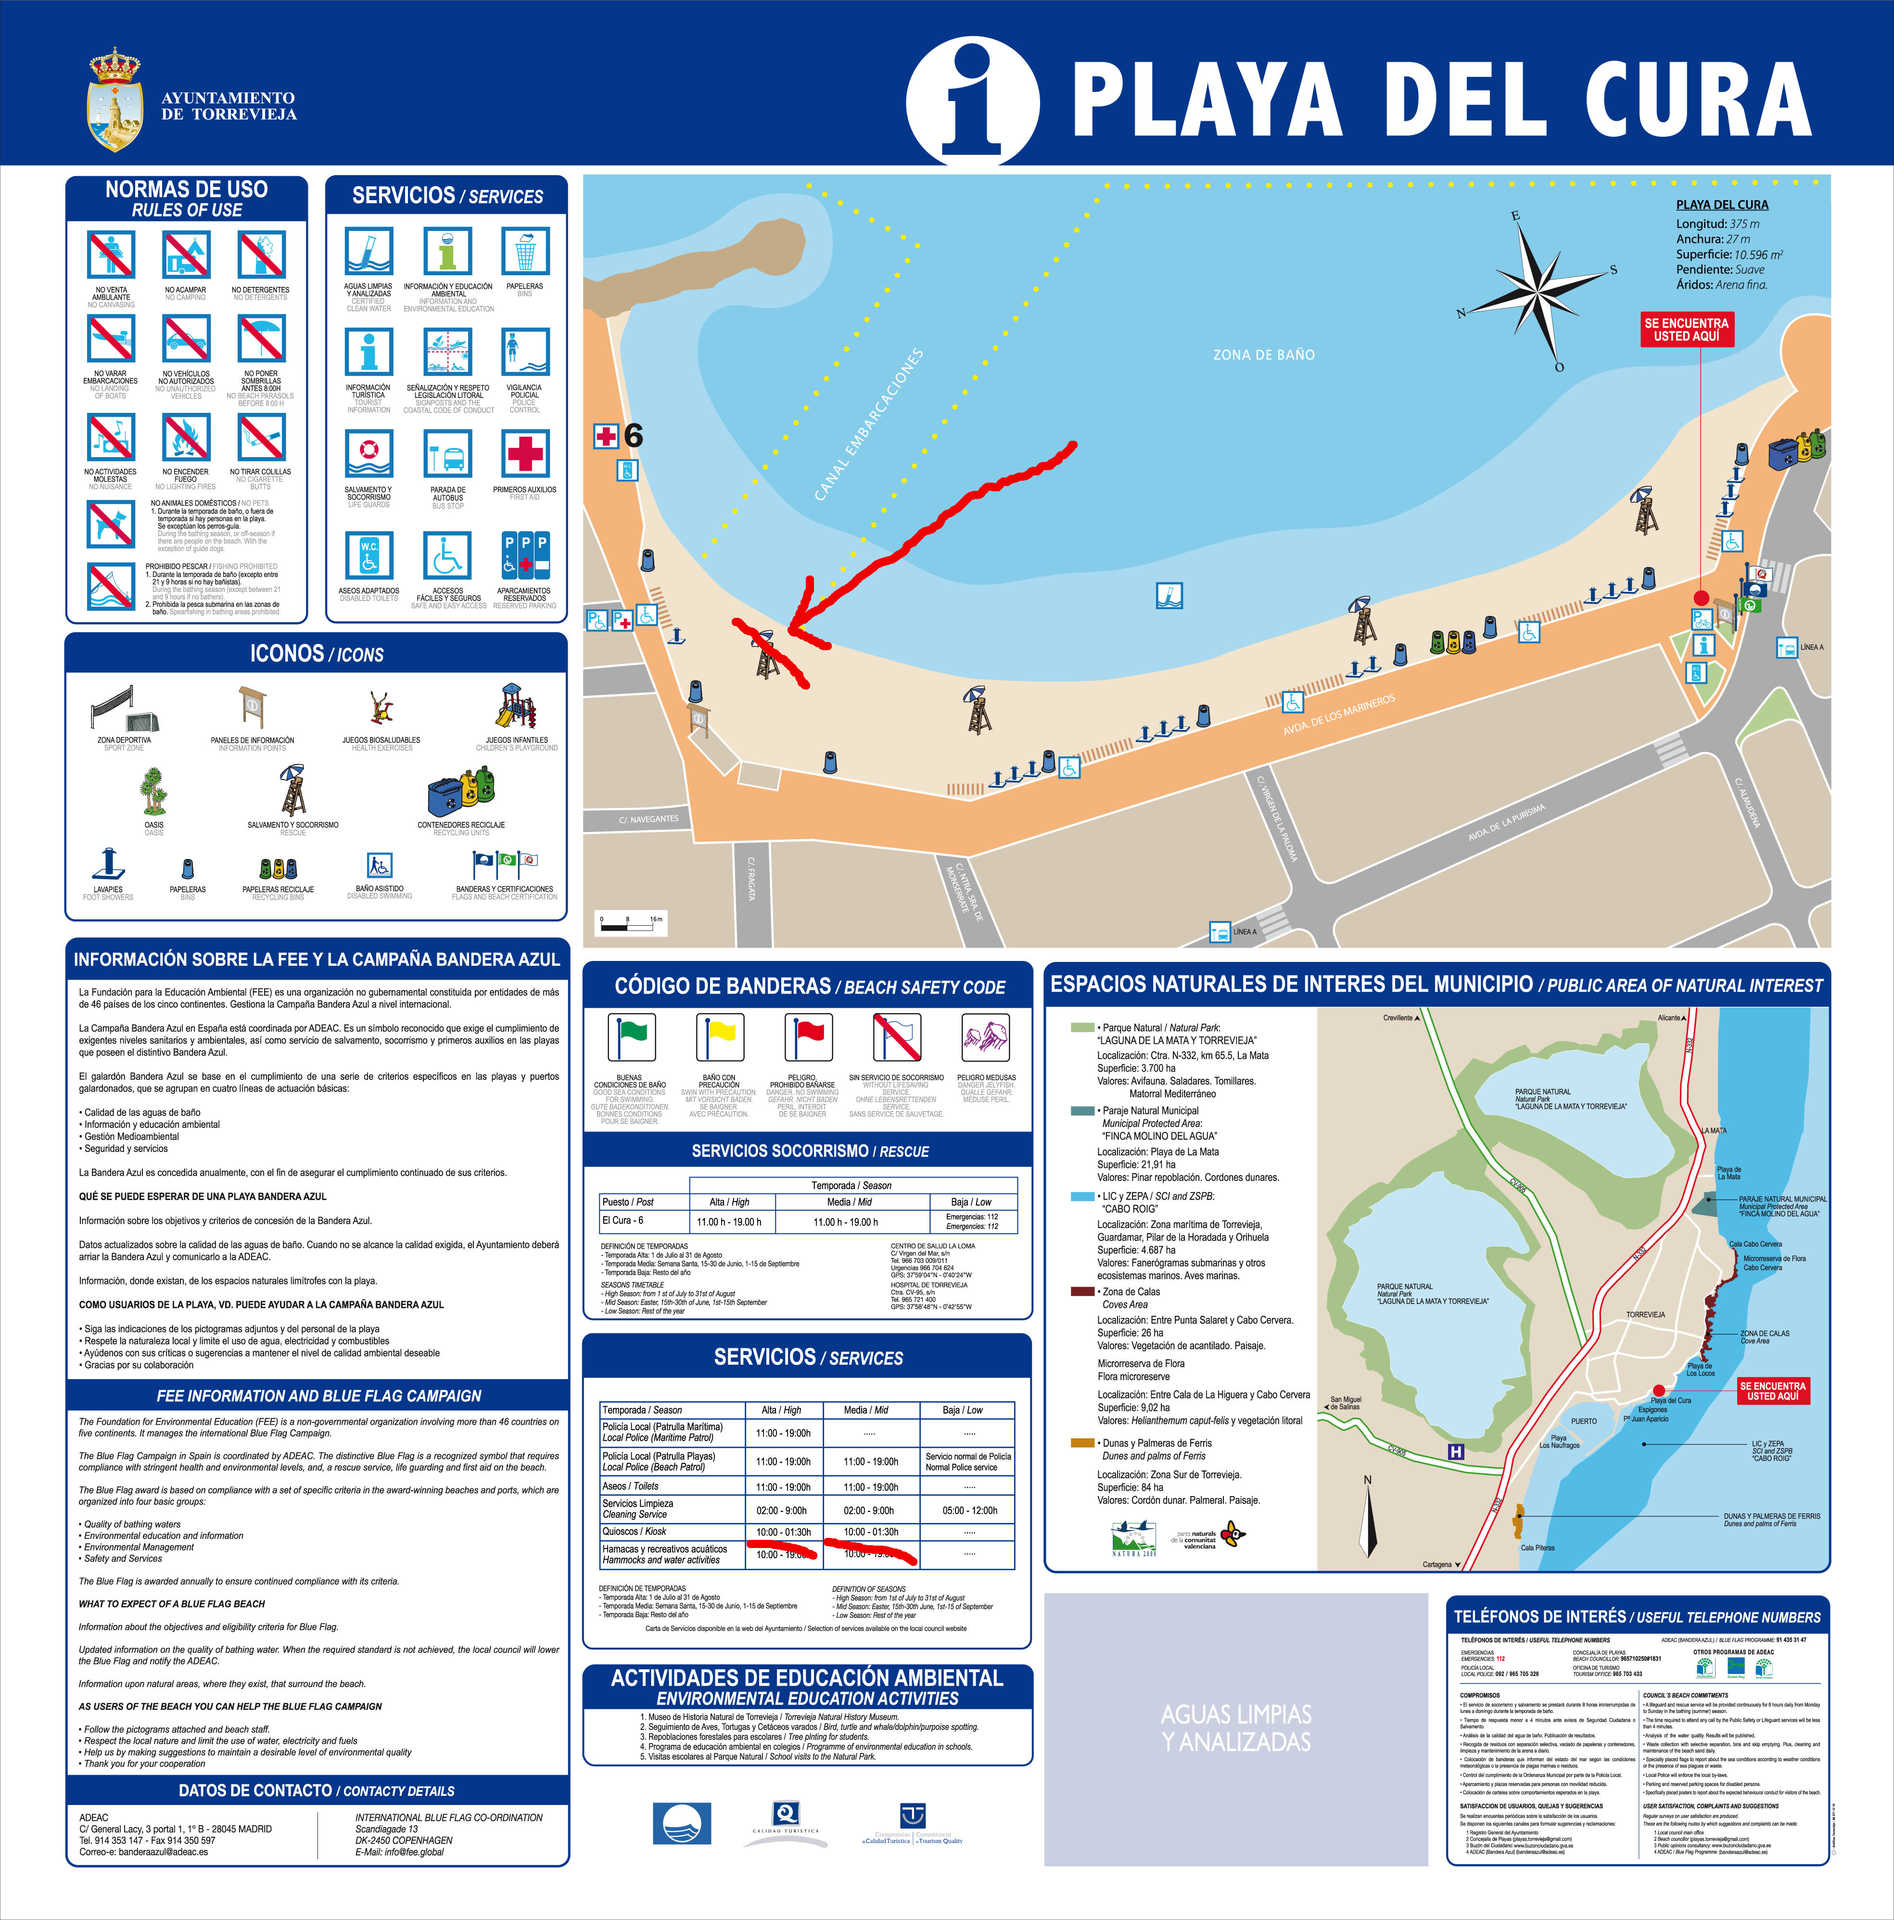 El Cura beach